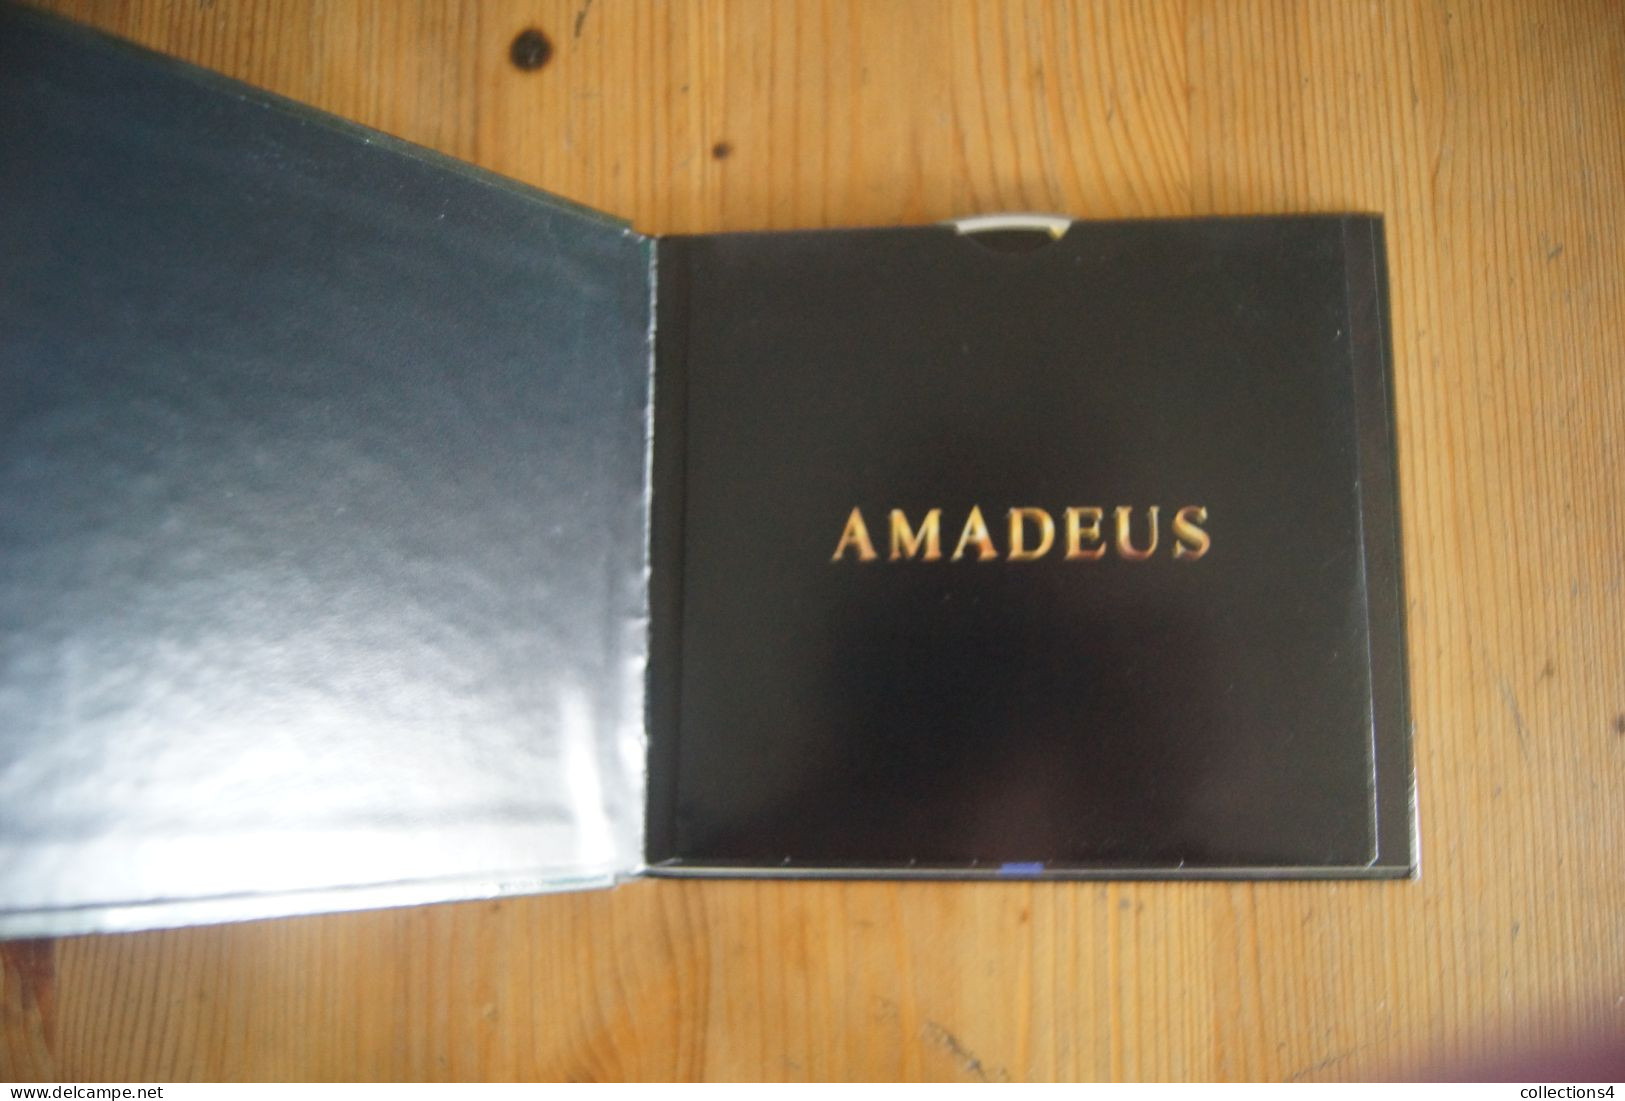 AMADEUS RARE DOUBLE CD LIVRE DU FILM DE MILOS FORMAN NEVILLE MARRINER VALEUR+ 1998 - Soundtracks, Film Music